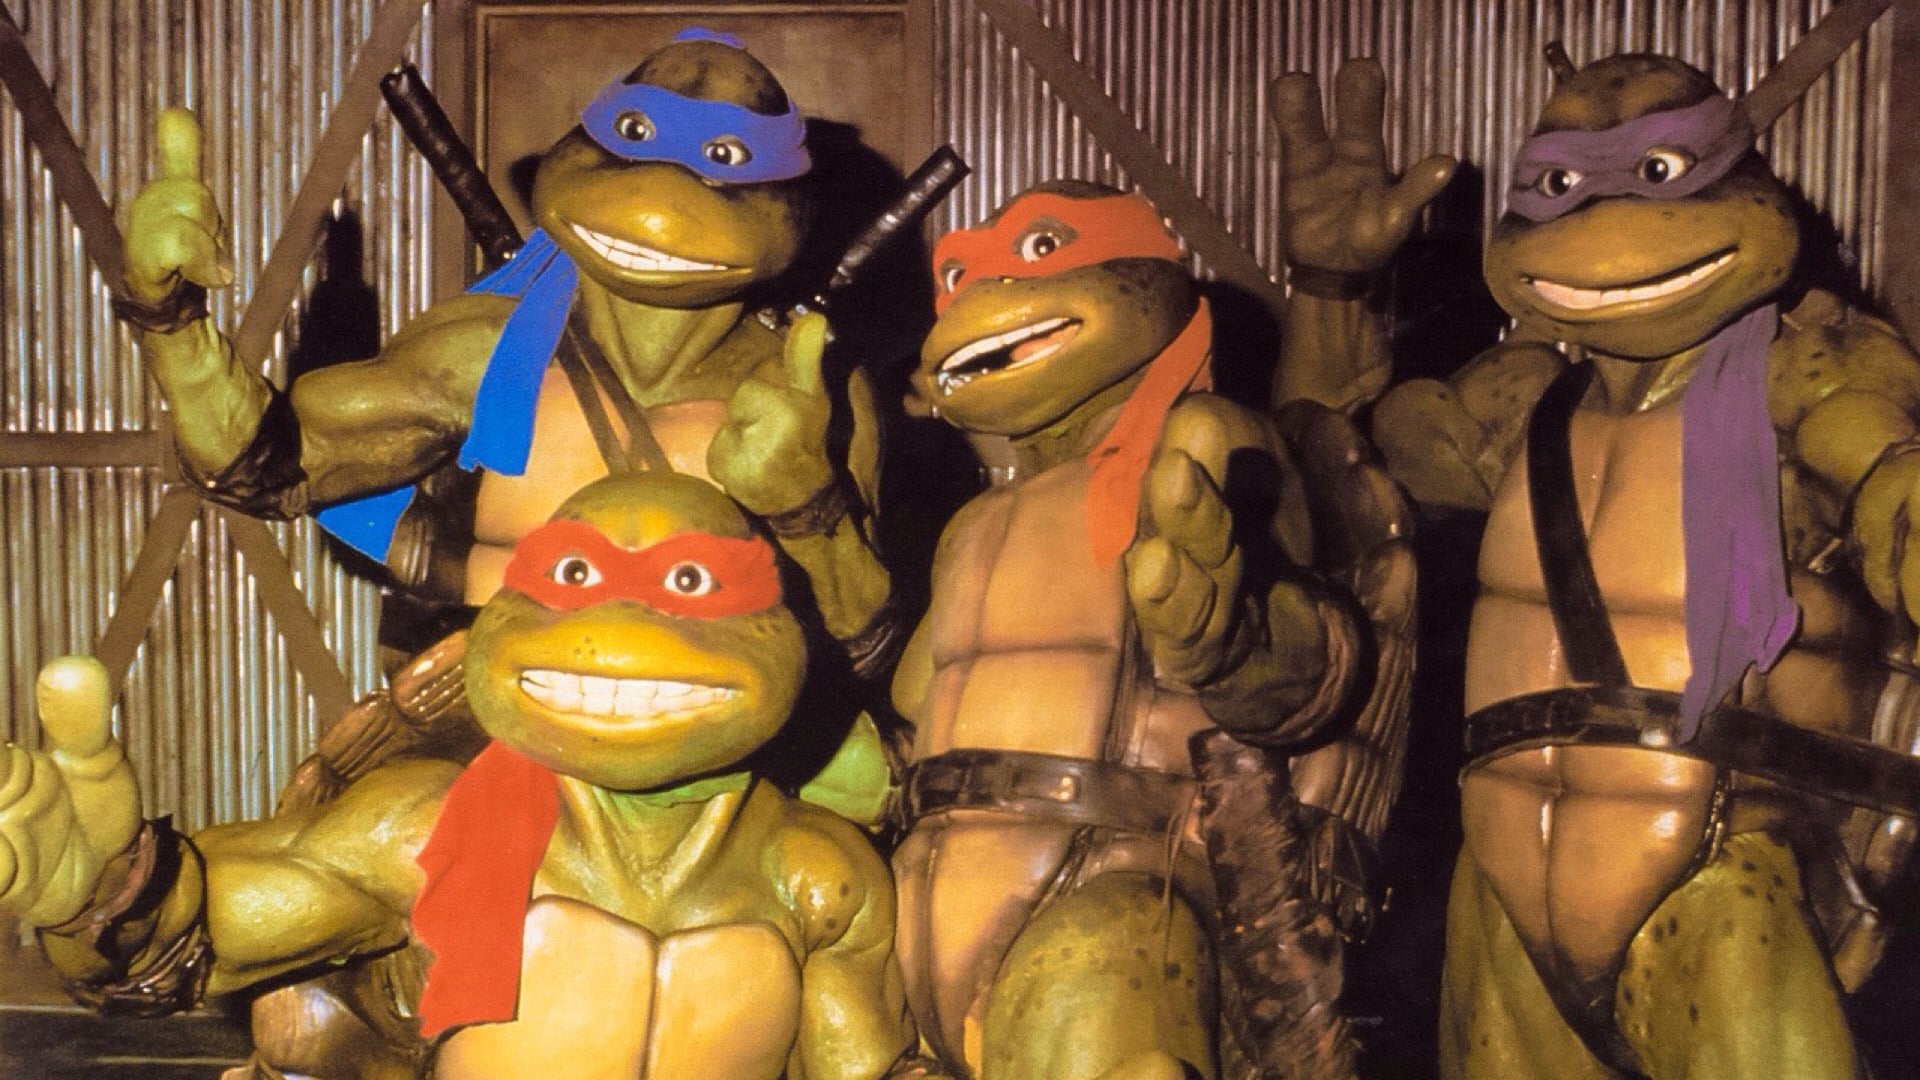 Teenage Mutant Ninja Turtles II: The Secret of the Ooze